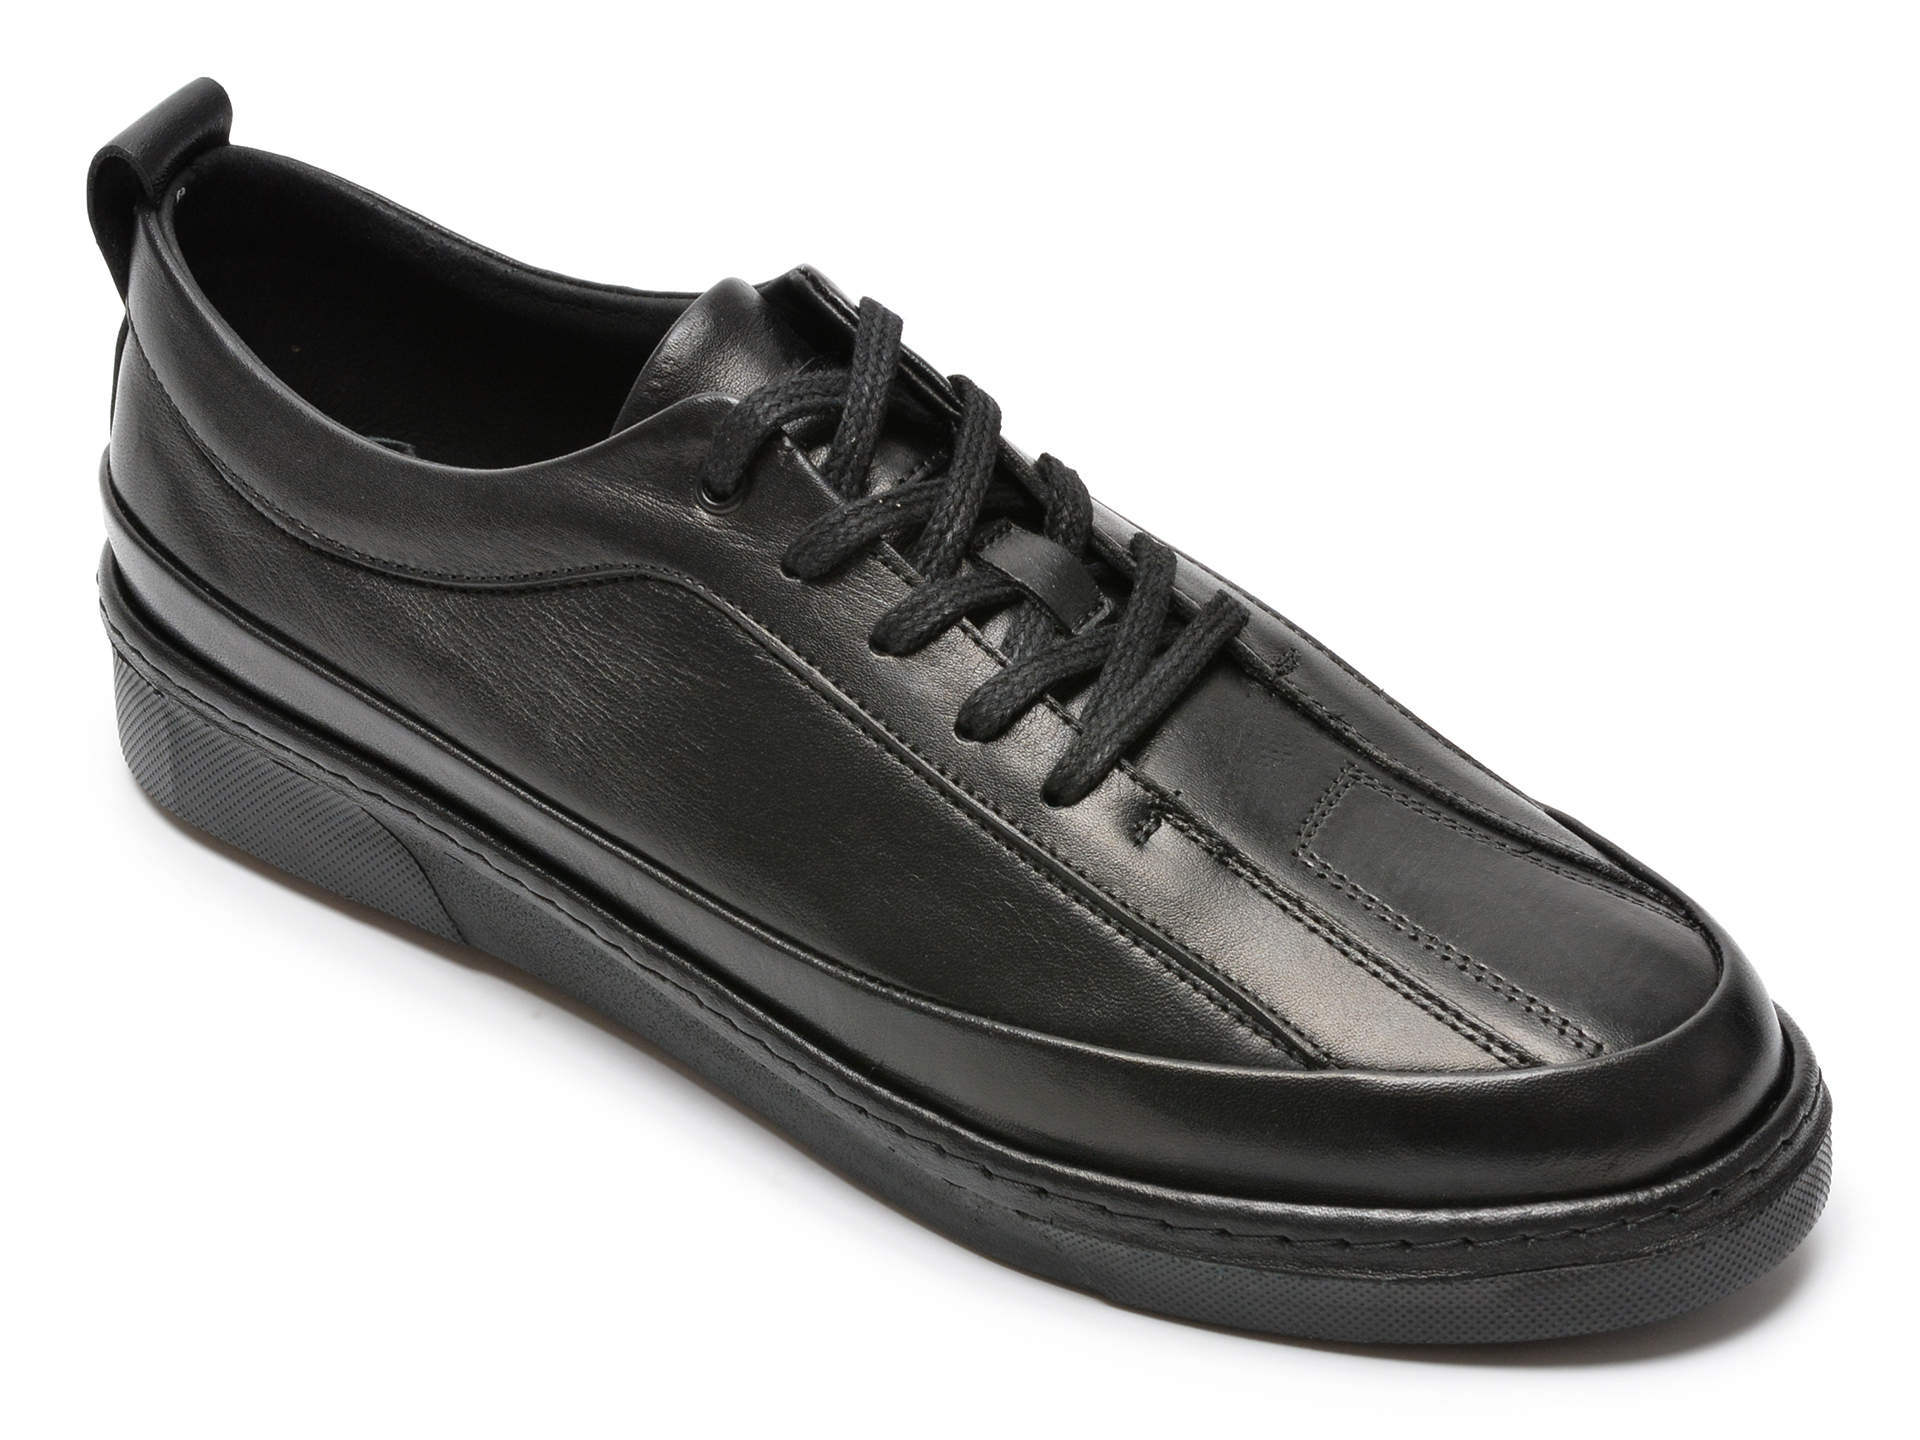 Pantofi OTTER negri, M6416, din piele naturala 2022 ❤️ Pret Super Black Friday otter.ro imagine noua 2022